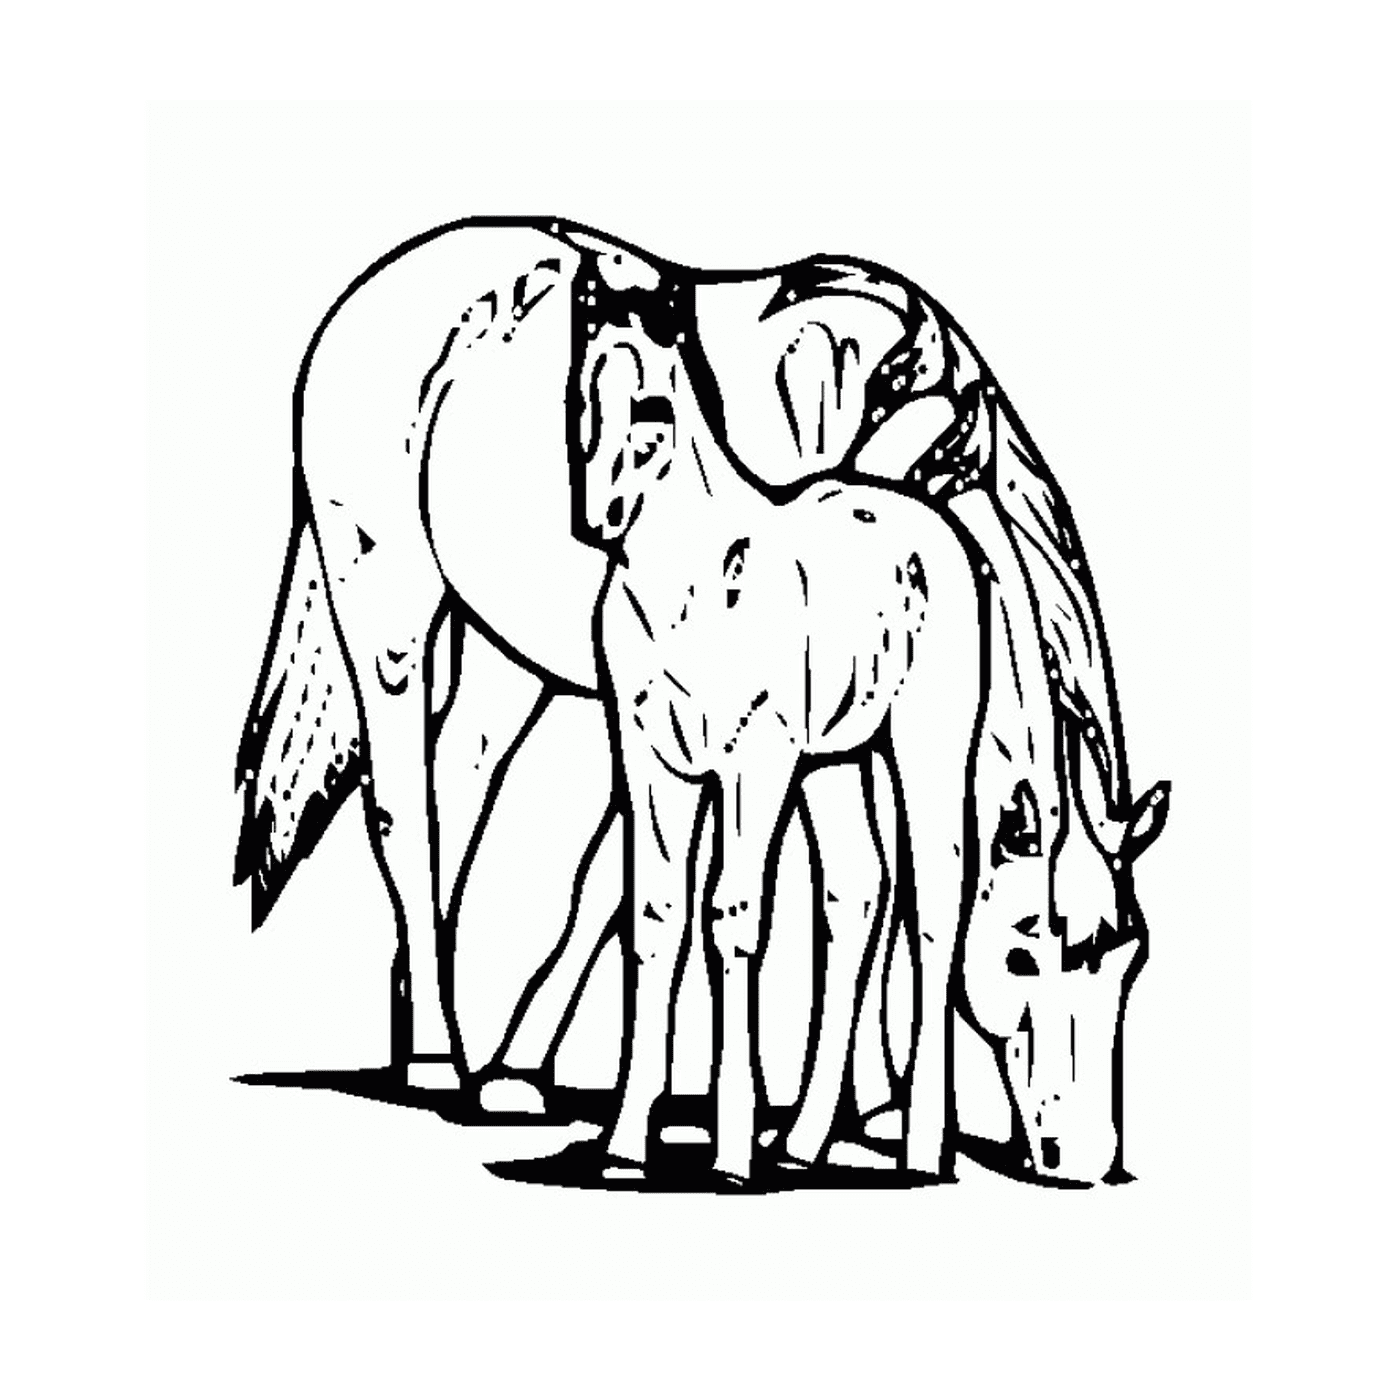  Caballo y su potro - Un caballo y un potro 